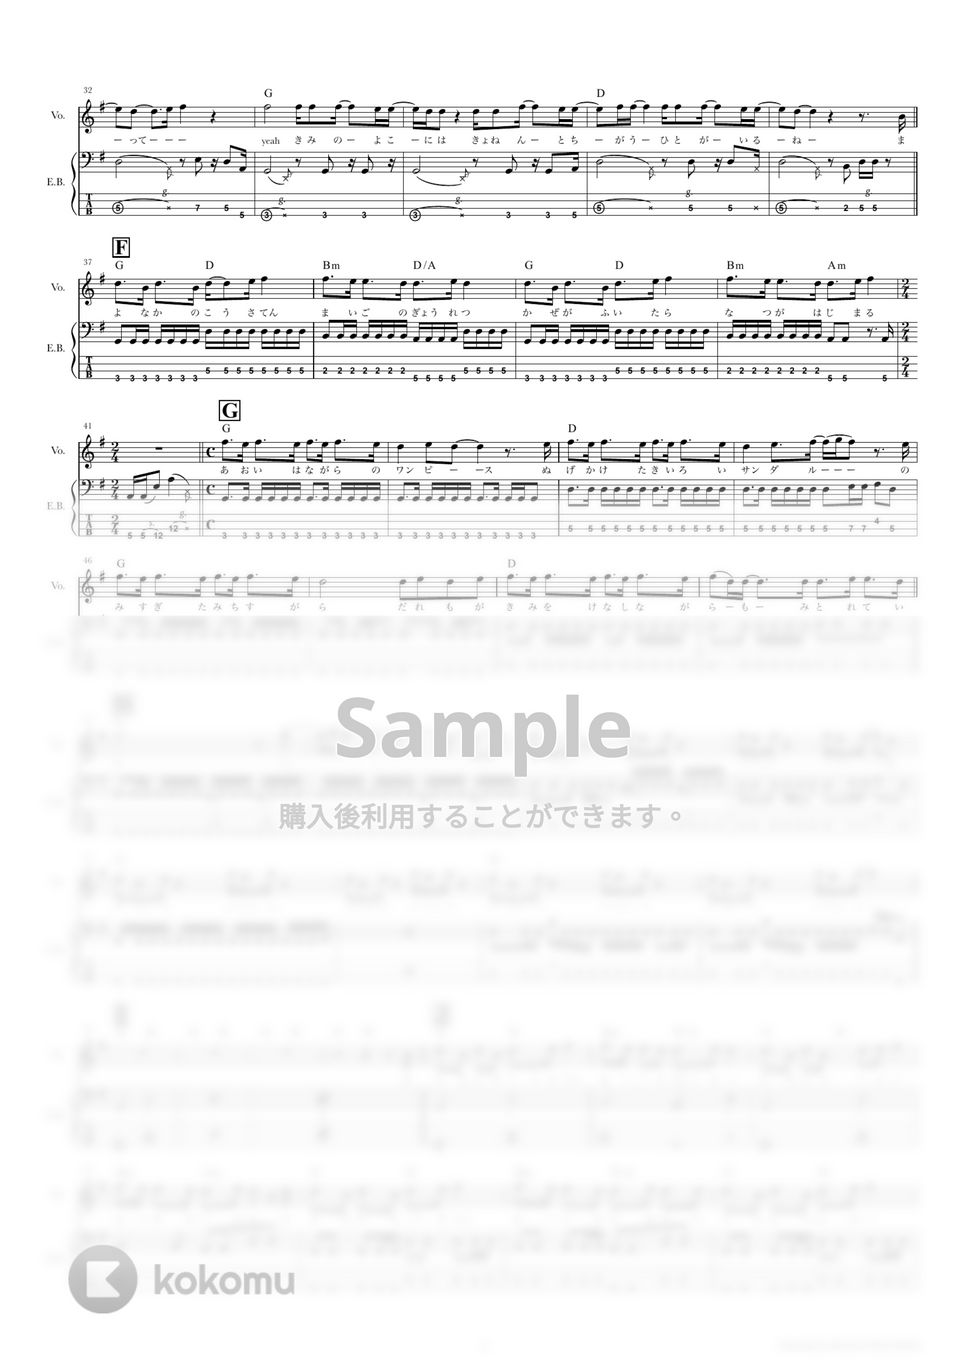 きのこ帝国 - パラノイドパレード (ベーススコア・歌詞・コード付き) by TRIAD GUITAR SCHOOL